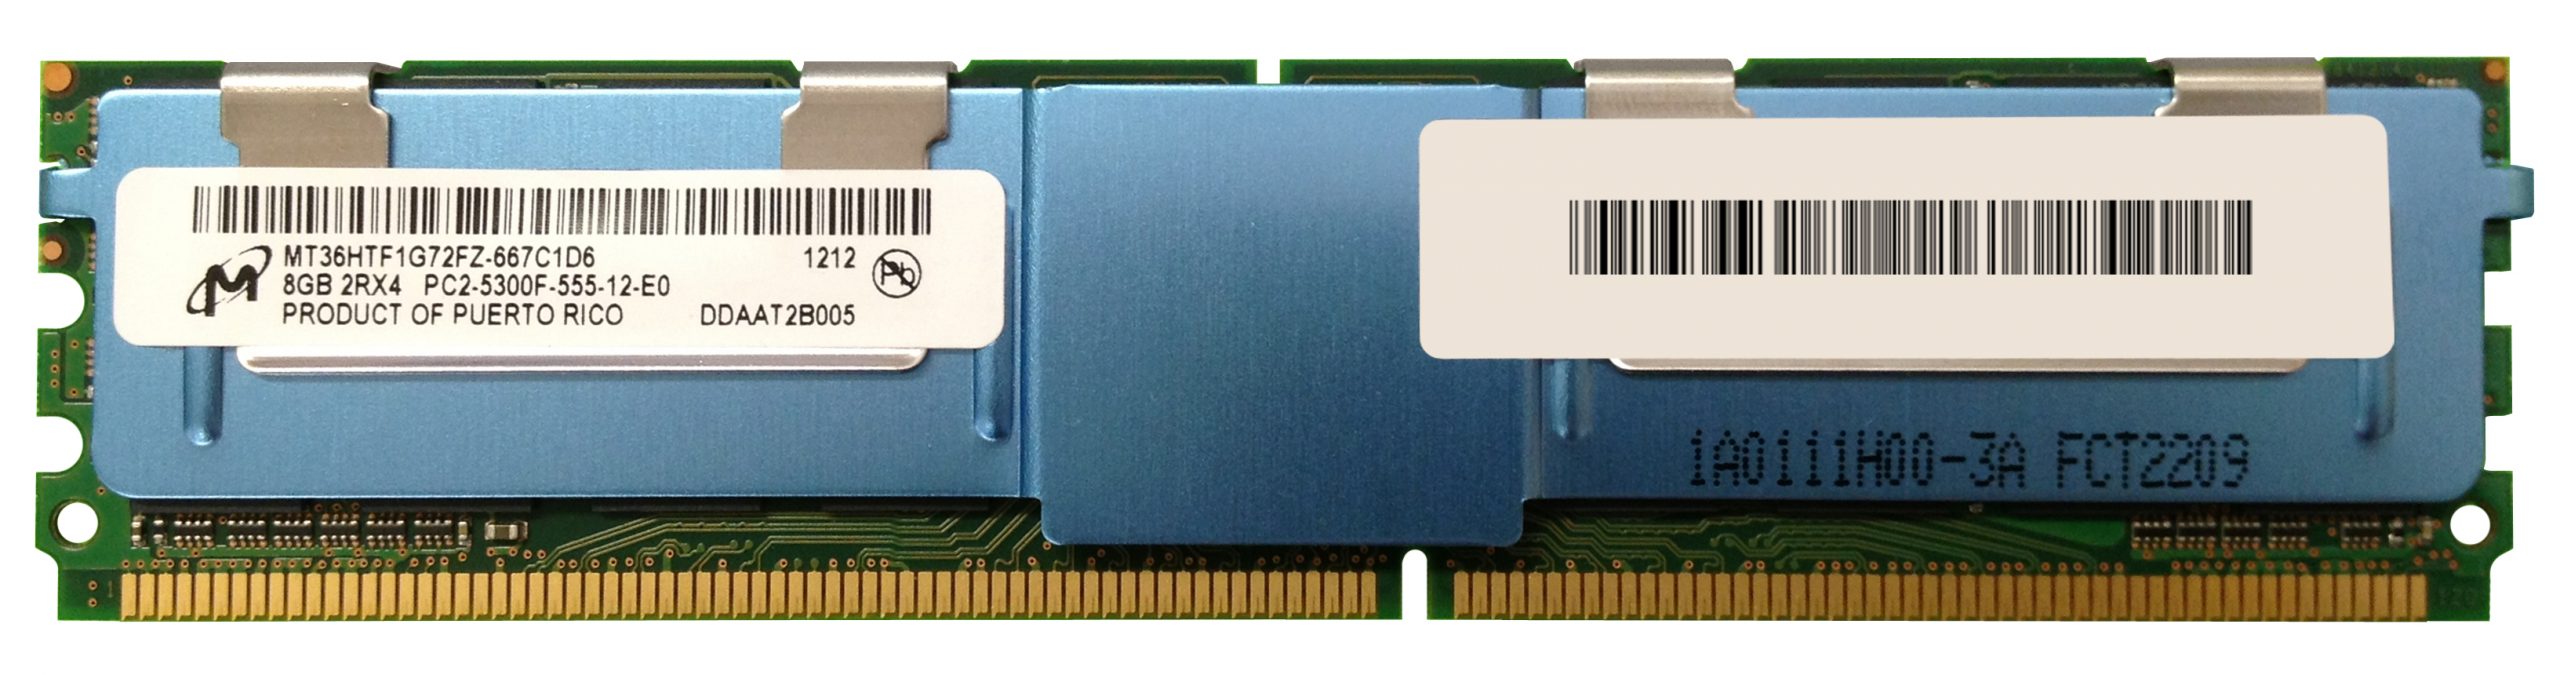 MICRON 8 GB DDR2-667 FBDIMM 2Rx4 usw. PC2-5300F MT36HTF1G72FZ-667C1D6